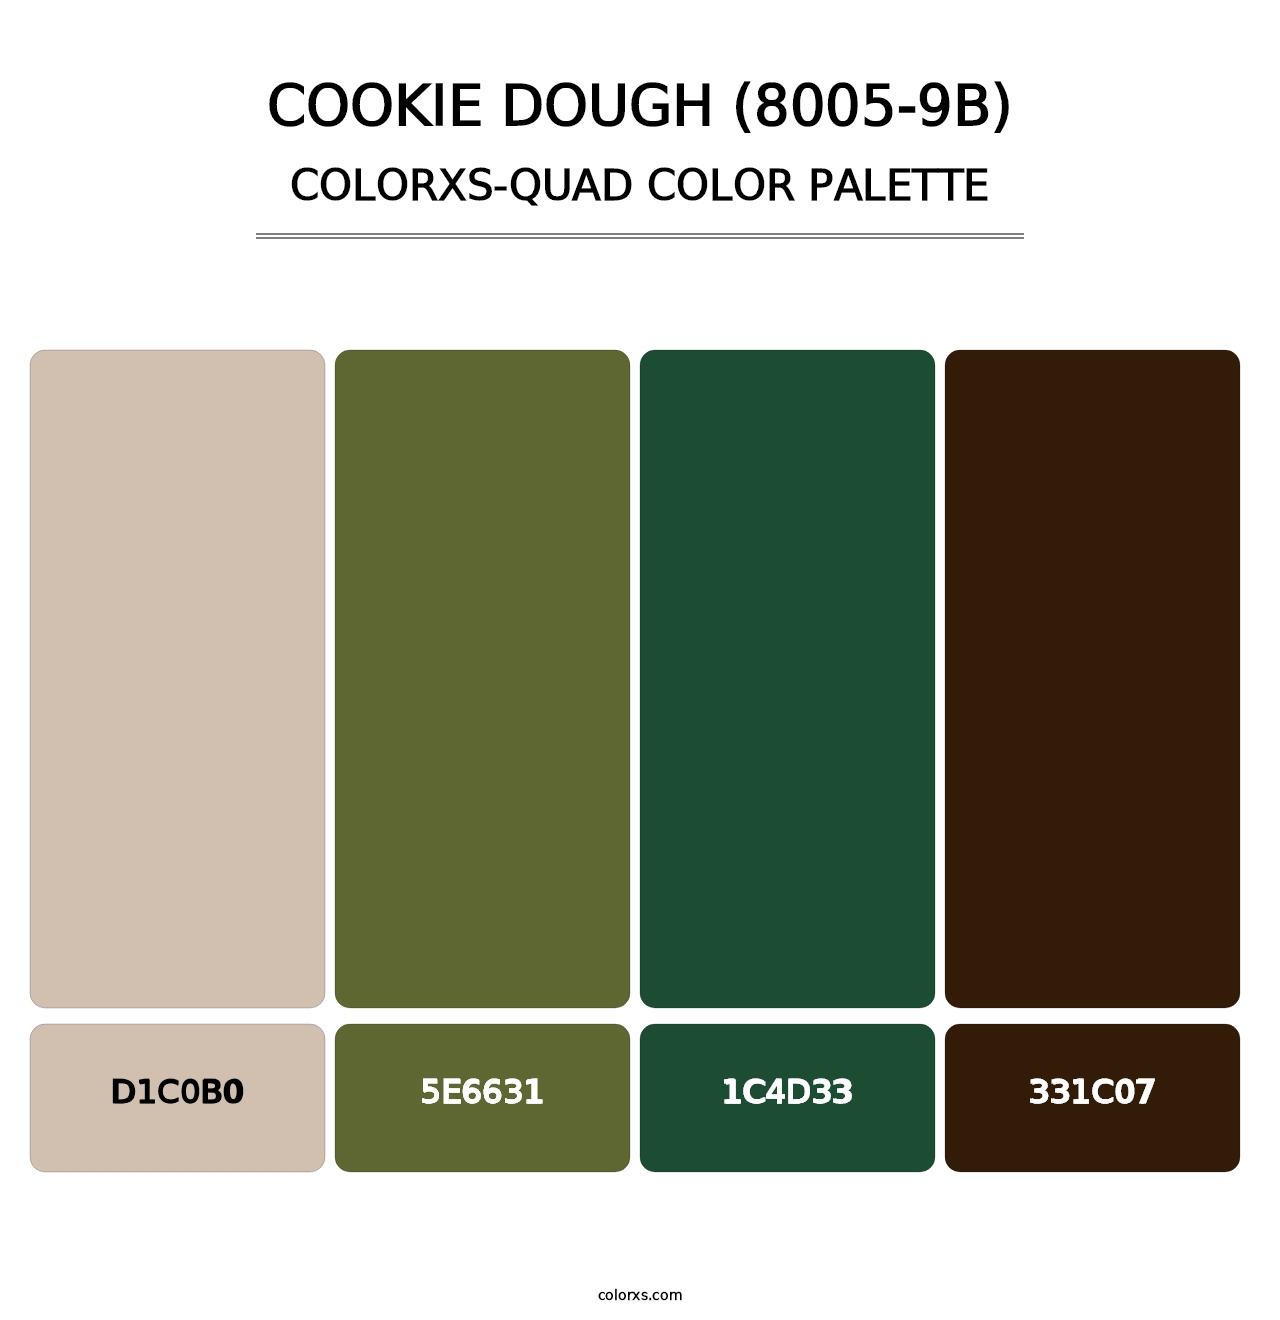 Cookie Dough (8005-9B) - Colorxs Quad Palette